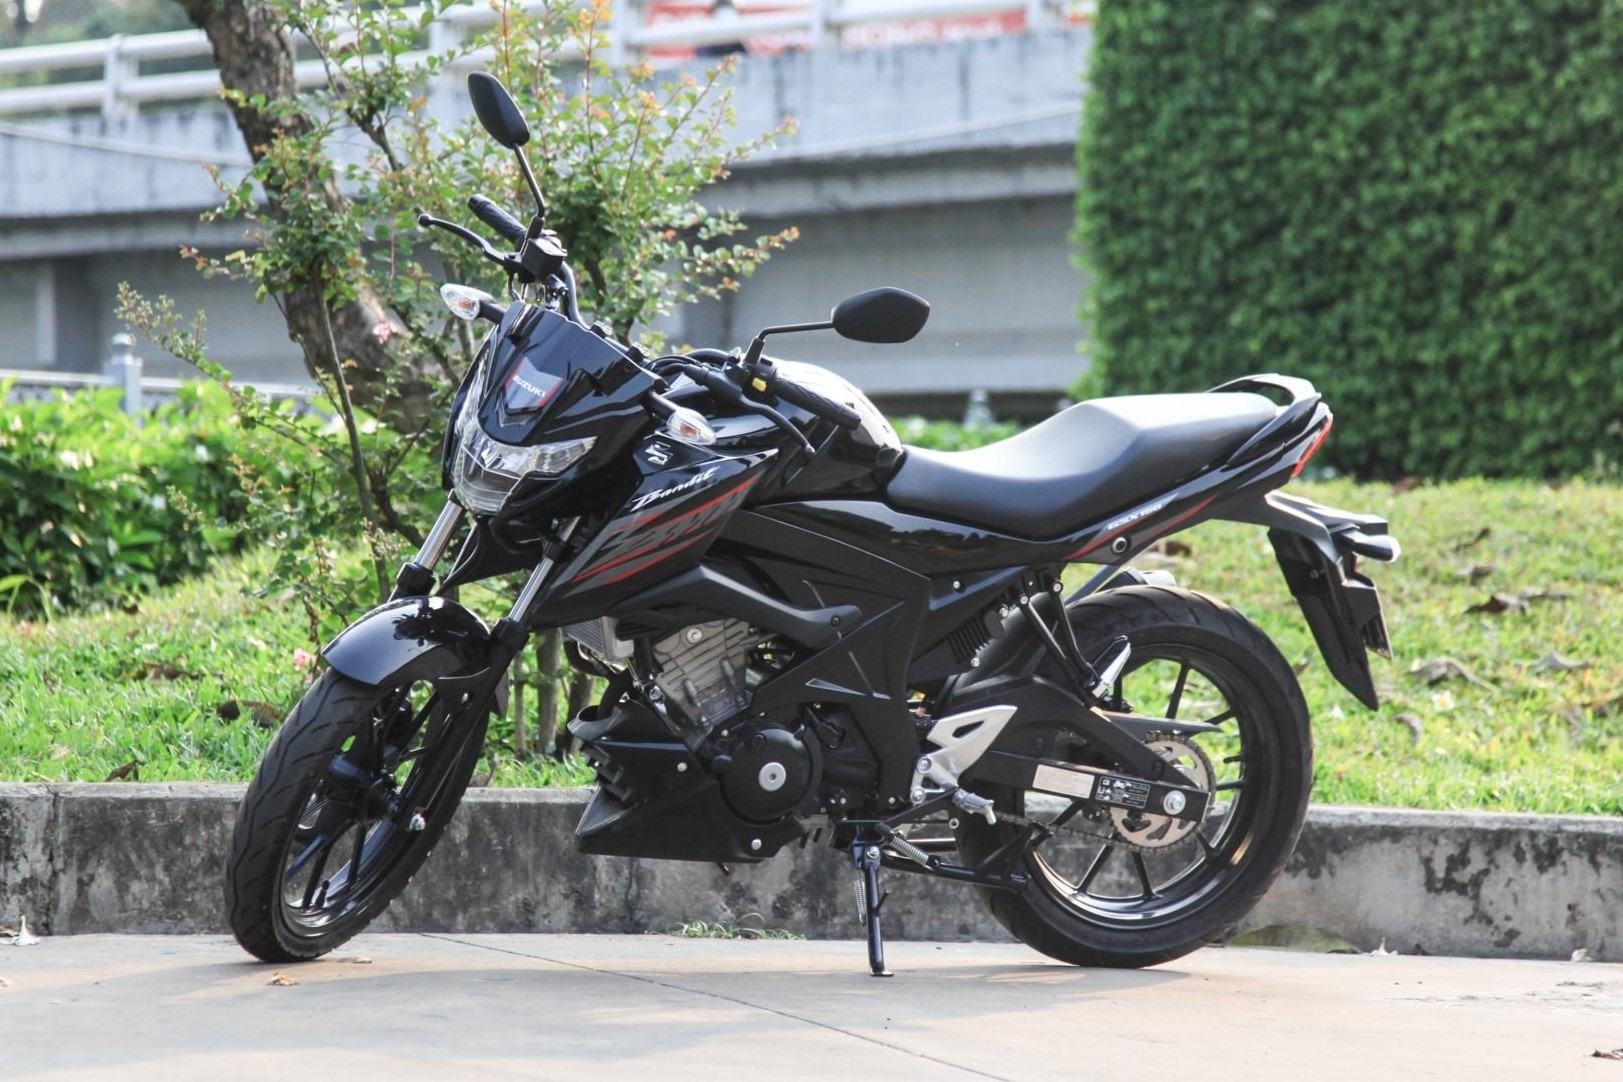 Xe máy Suzuki GSX Bandit 150  Giá tốt nhất Việt Nam